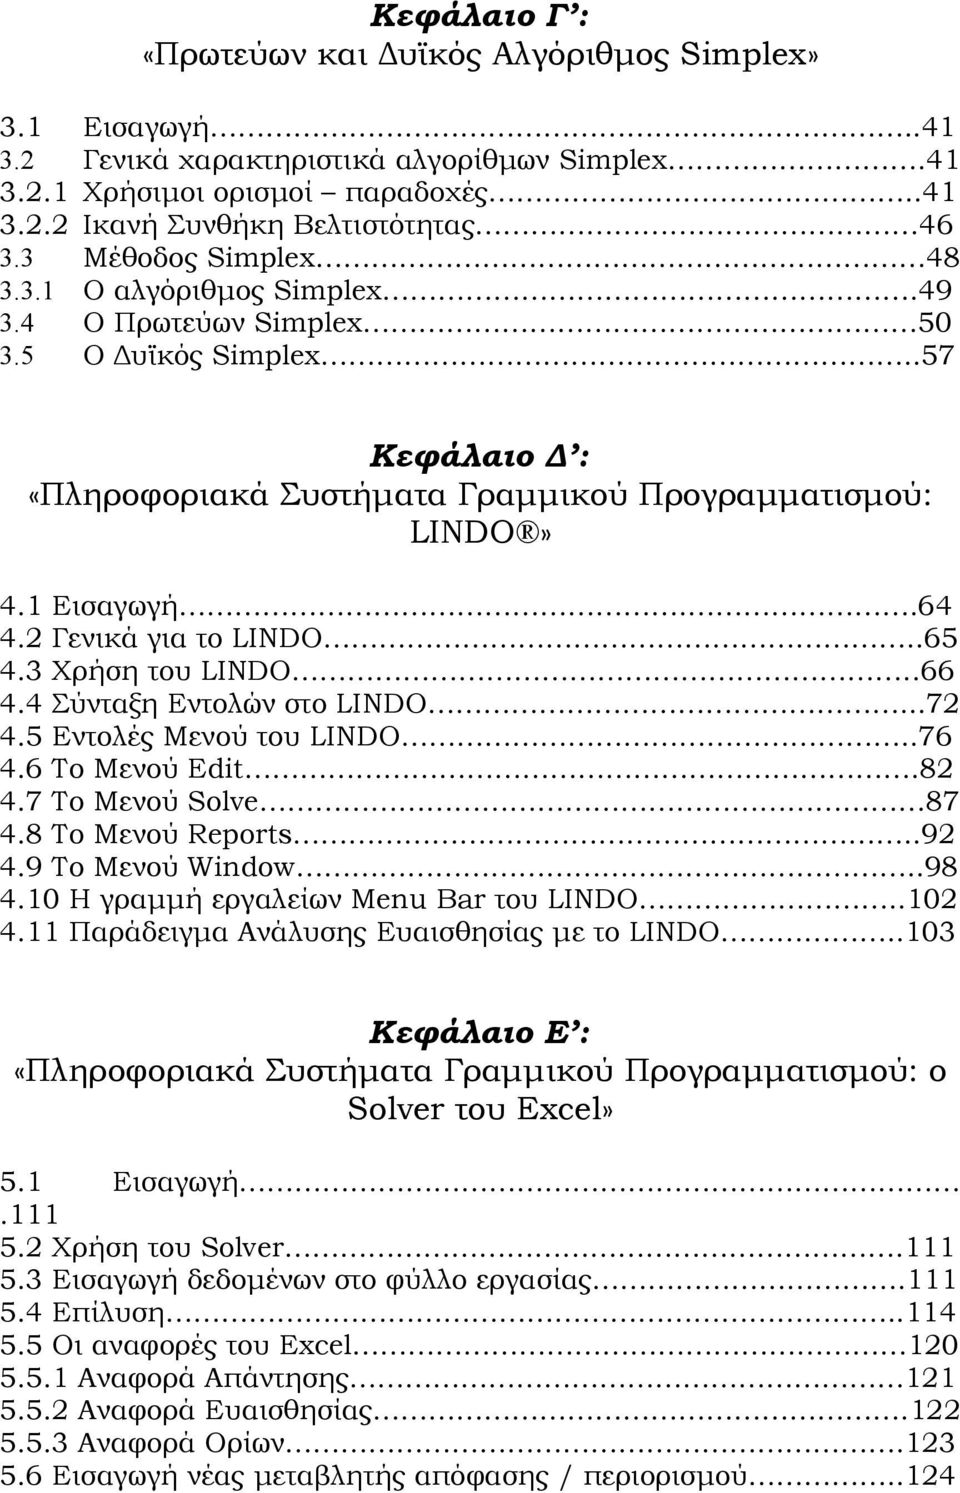 1 Εισαγωγή..64 4.2 Γενικά για το LINDO..65 4.3 Χρήση του LINDO..66 4.4 Σύνταξη Εντολών στο LINDO...72 4.5 Εντολές Μενού του LINDO..76 4.6 Το Μενού Edit.82 4.7 Το Μενού Solve 87 4.8 Το Μενού Reports.